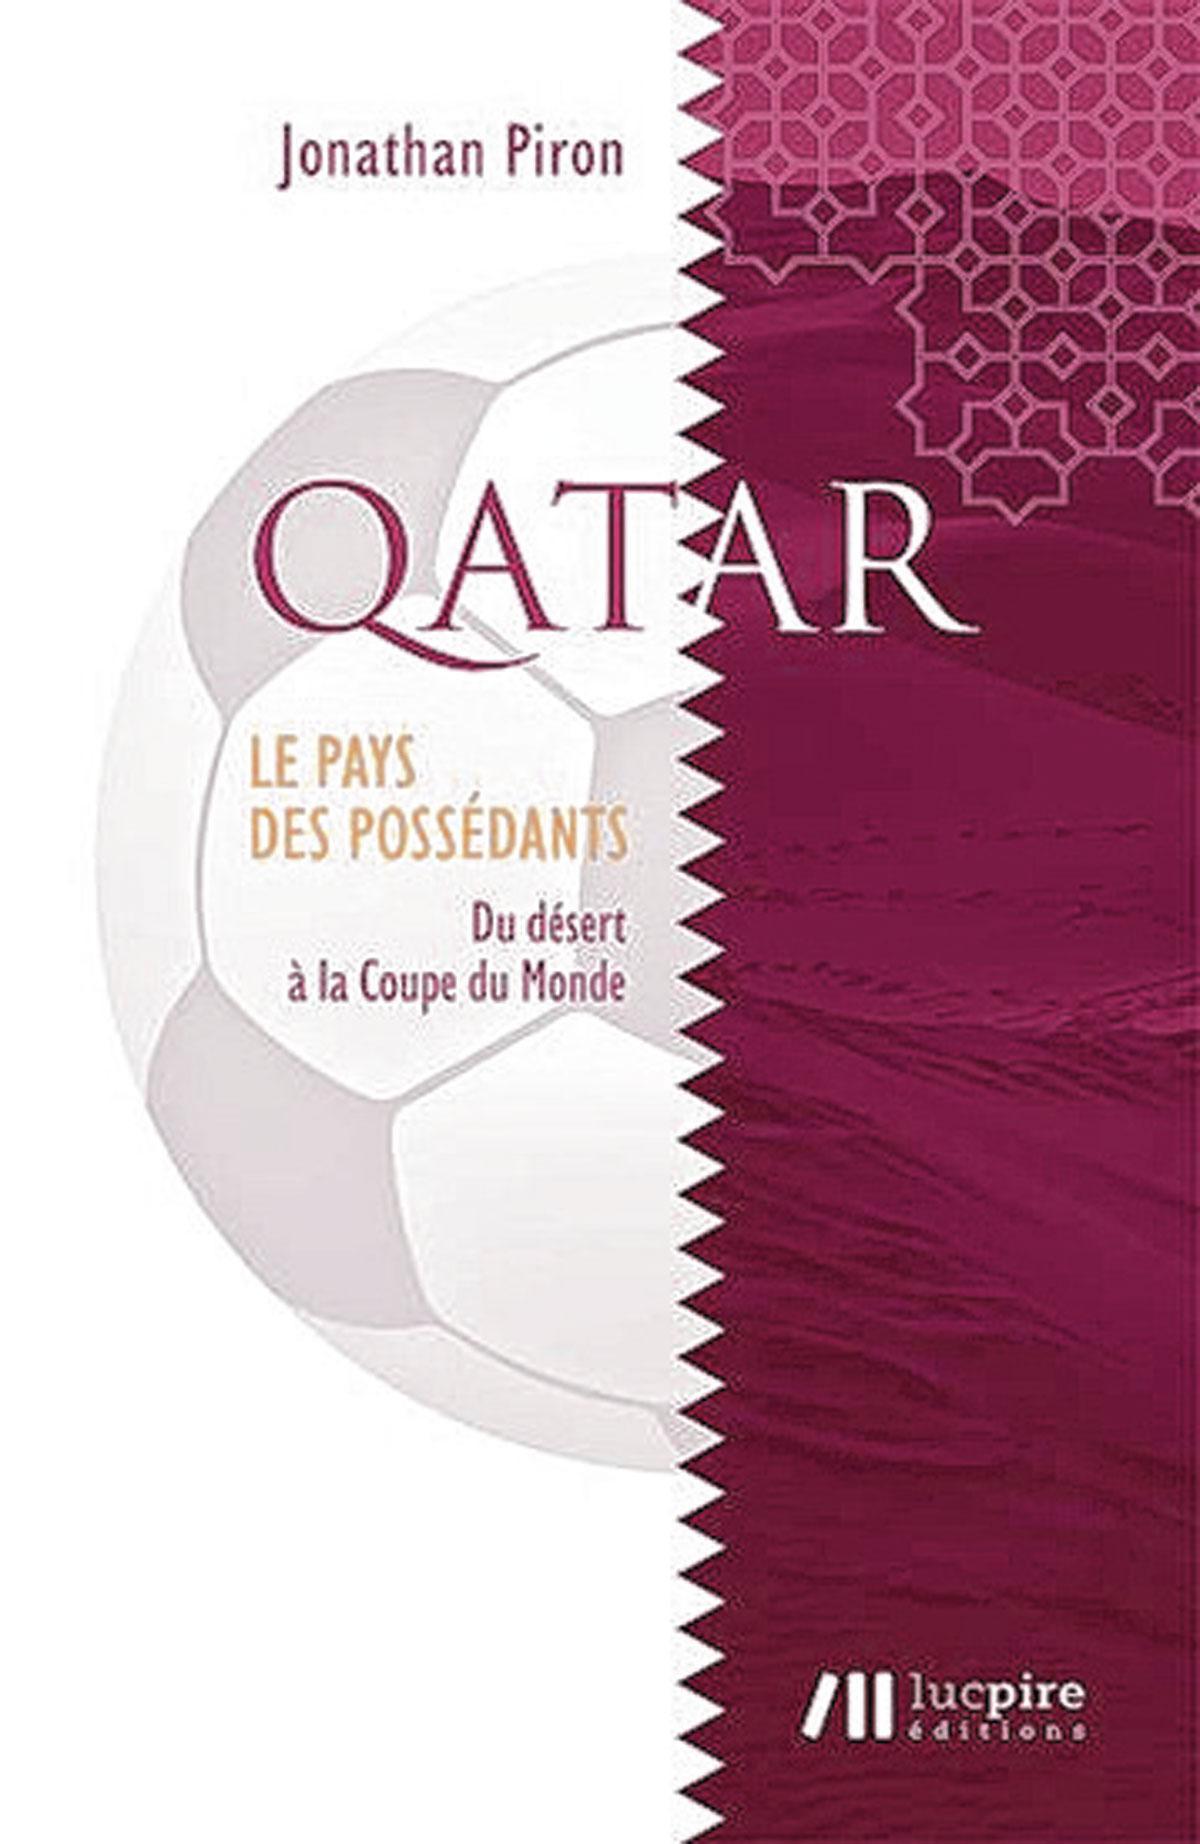 (1) Qatar, le pays des possédants - Du désert à la Coupe du monde, par Jonathan Piron, Luc Pire, 160 p.